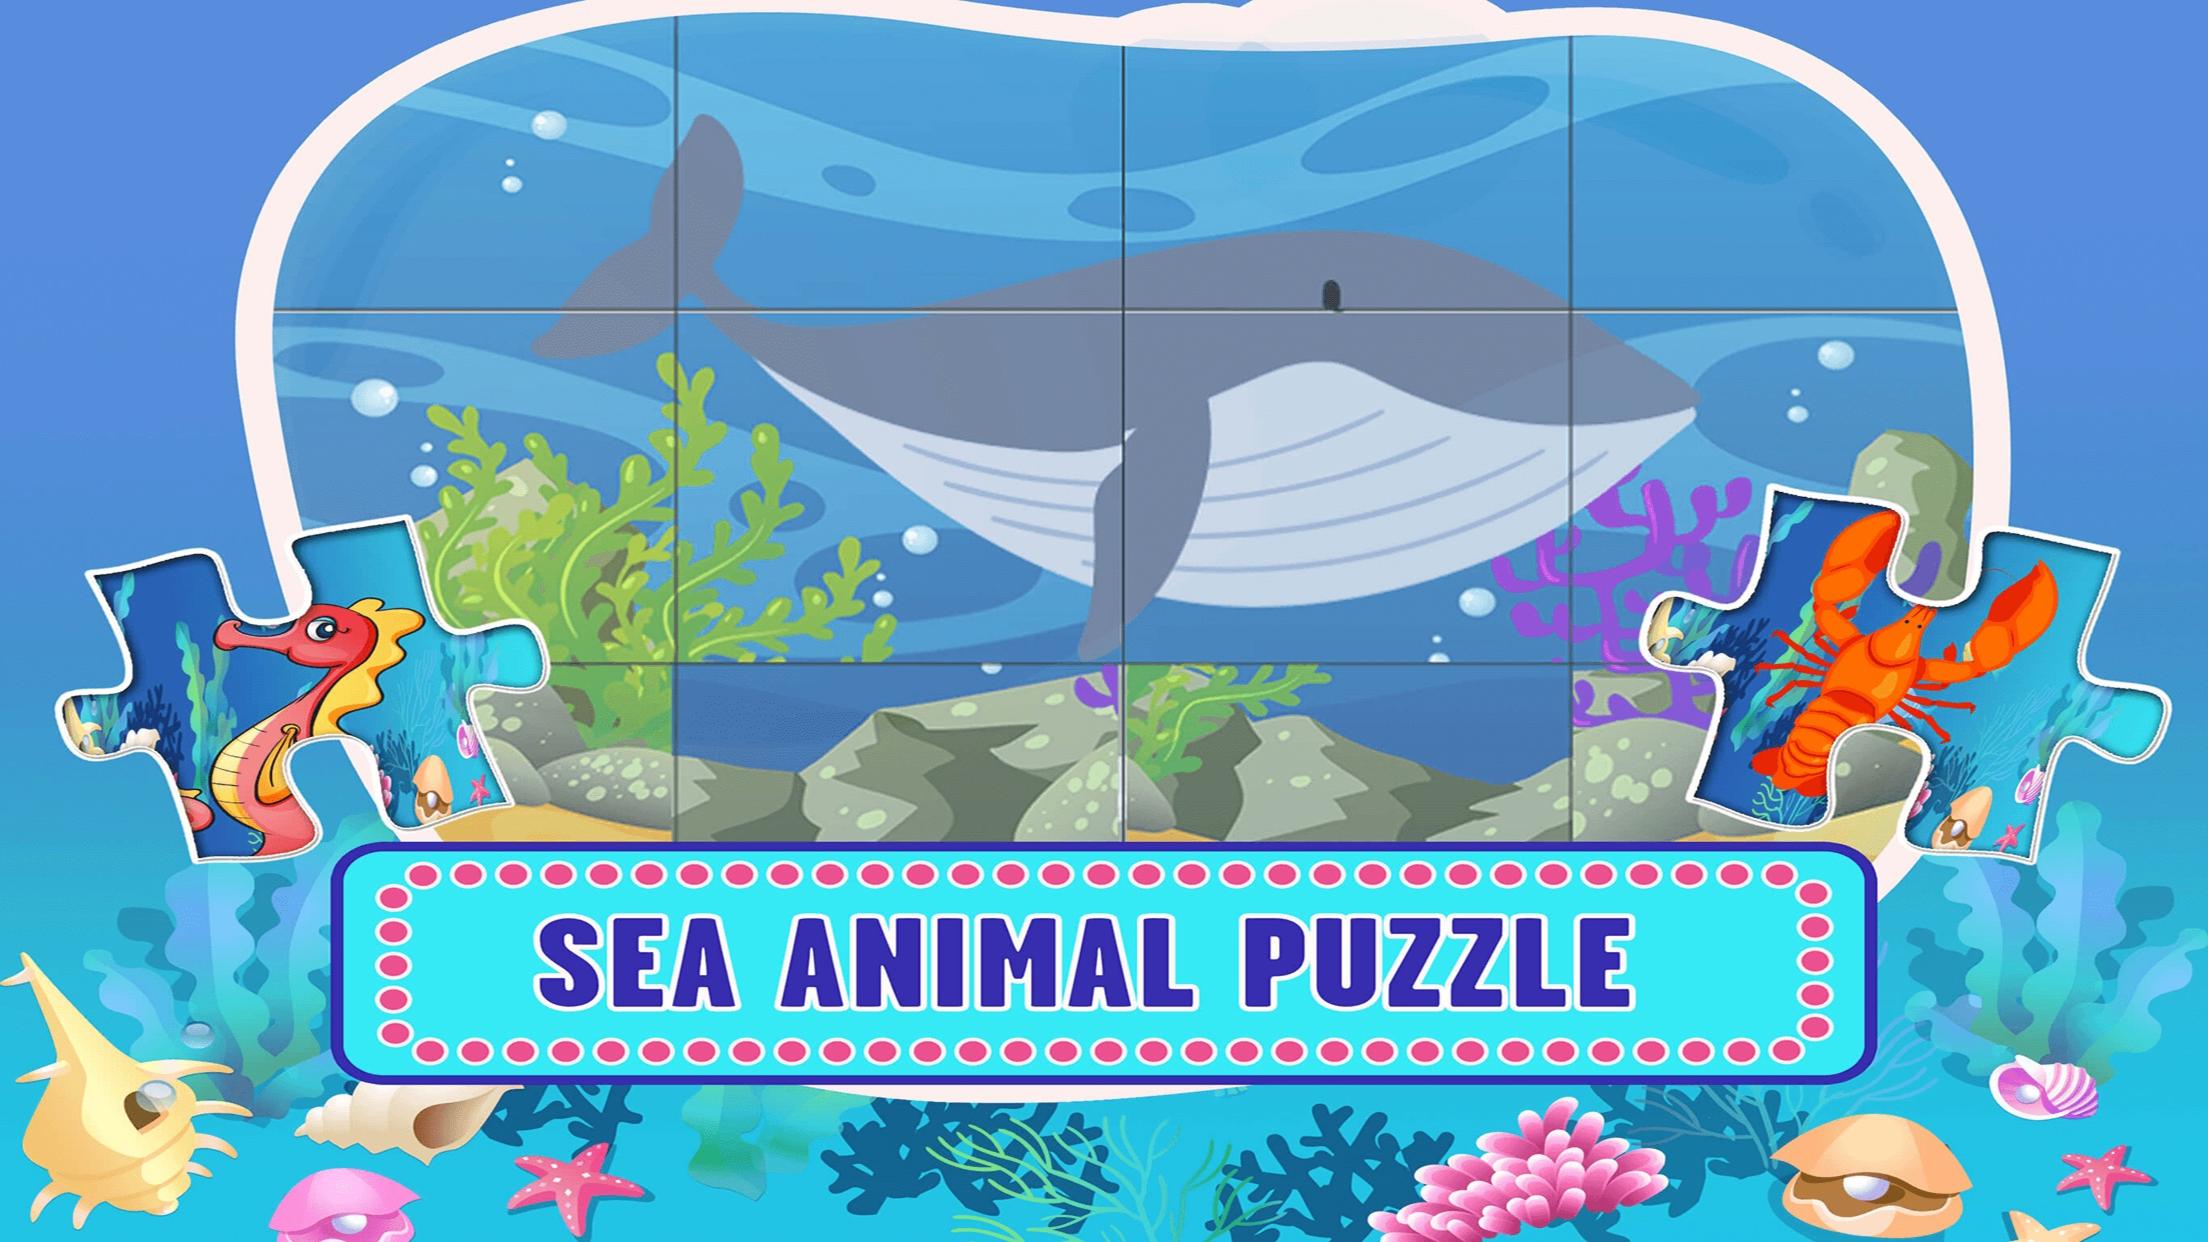 Игры с морскими животными. Морские игры для детей. Sea animals Puzzle. Настольные игры плакат. Детская морская игра